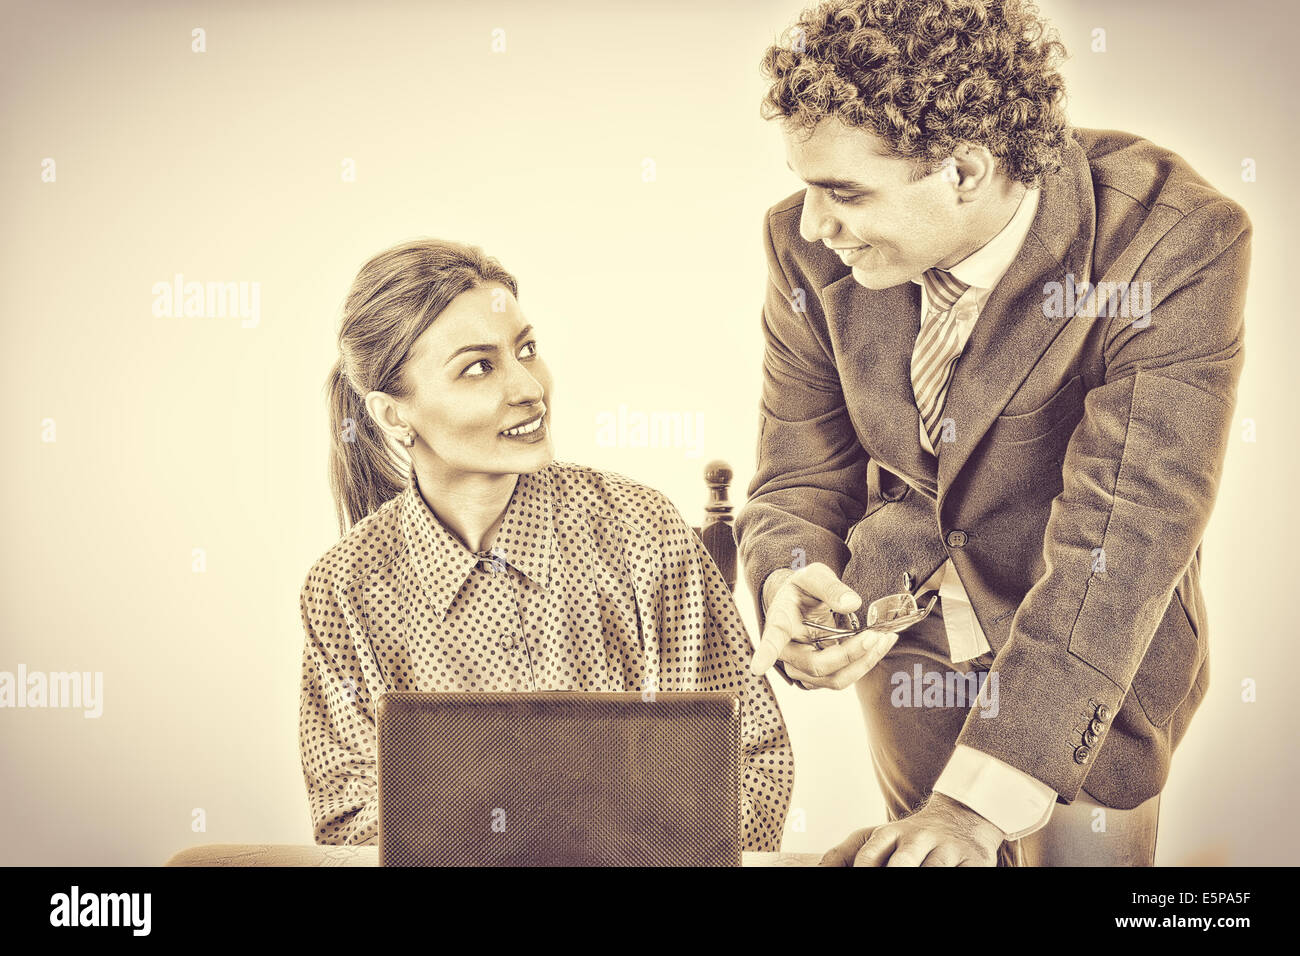 Jefe satisfecho y sonriente secretario trabajando juntos en equipo portátil, mostrando algo en la pantalla, en blanco y negro estilo vintage Foto de stock